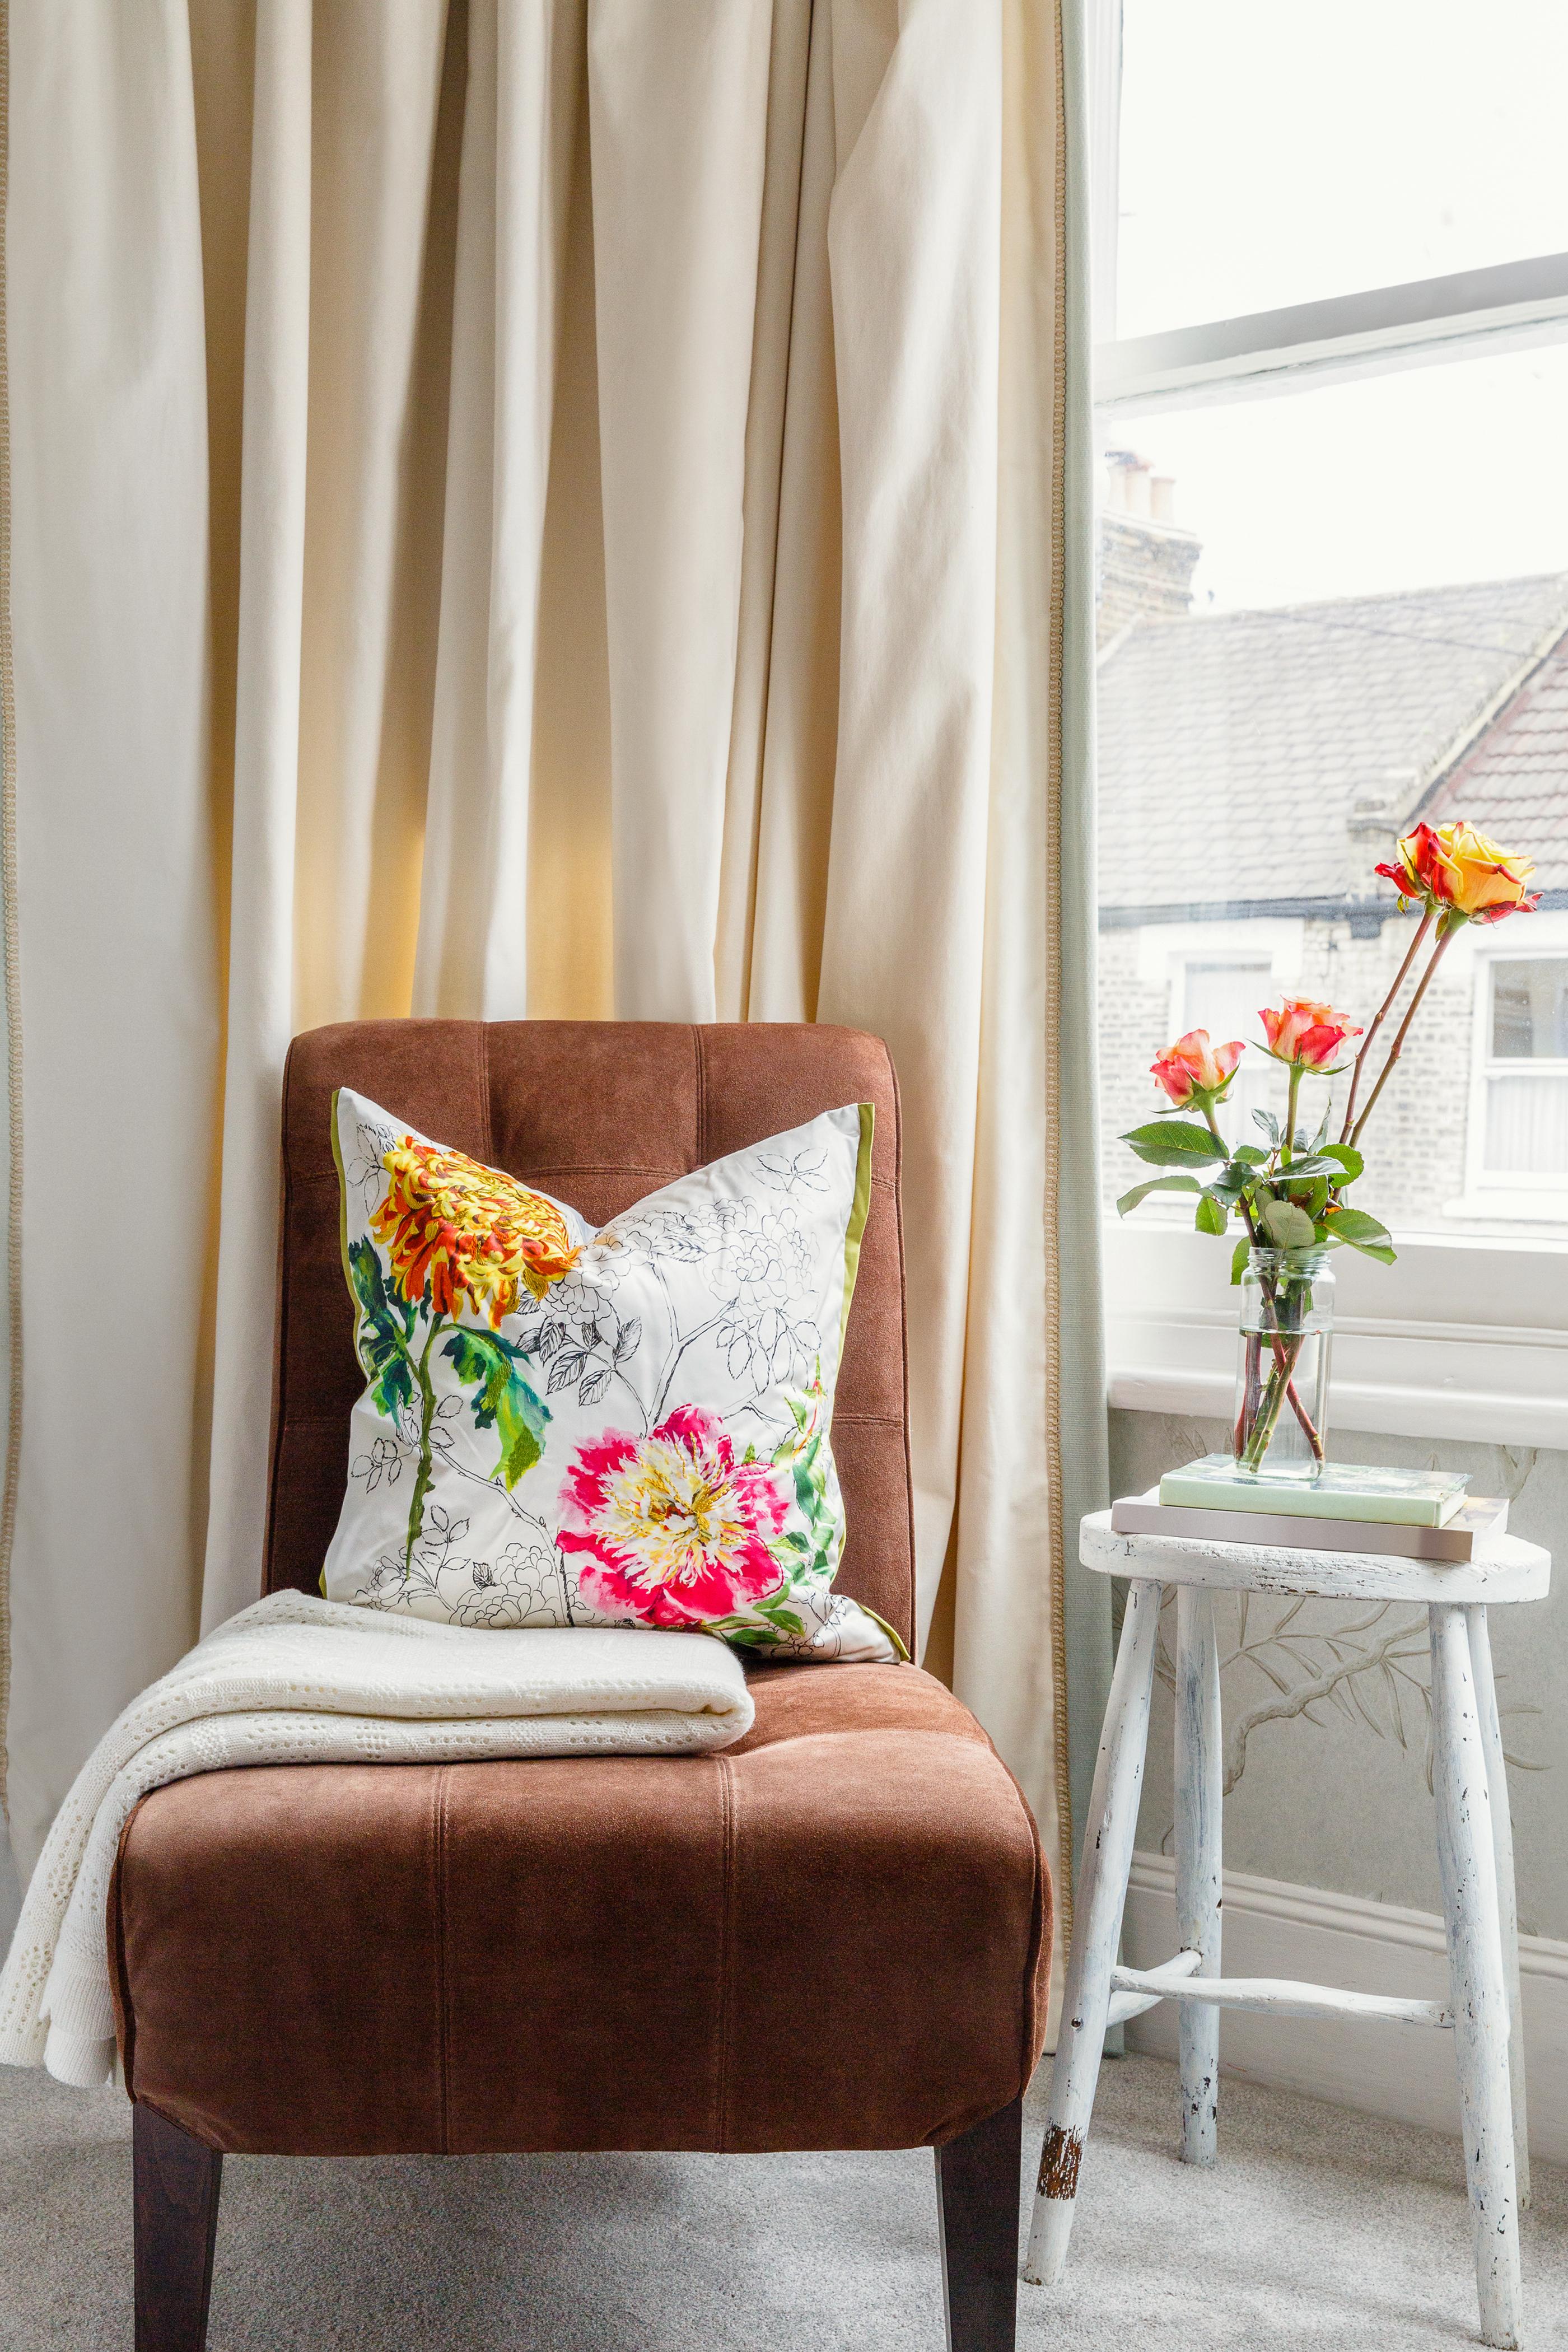 Světlo z okna zalévá roh s koberci a závěsy a s plyšem čalouněnou židlí doladěnou květinovým polštářem a dekou. Dóza čerstvě řezaných květin na dřevěném odkládacím stolku.